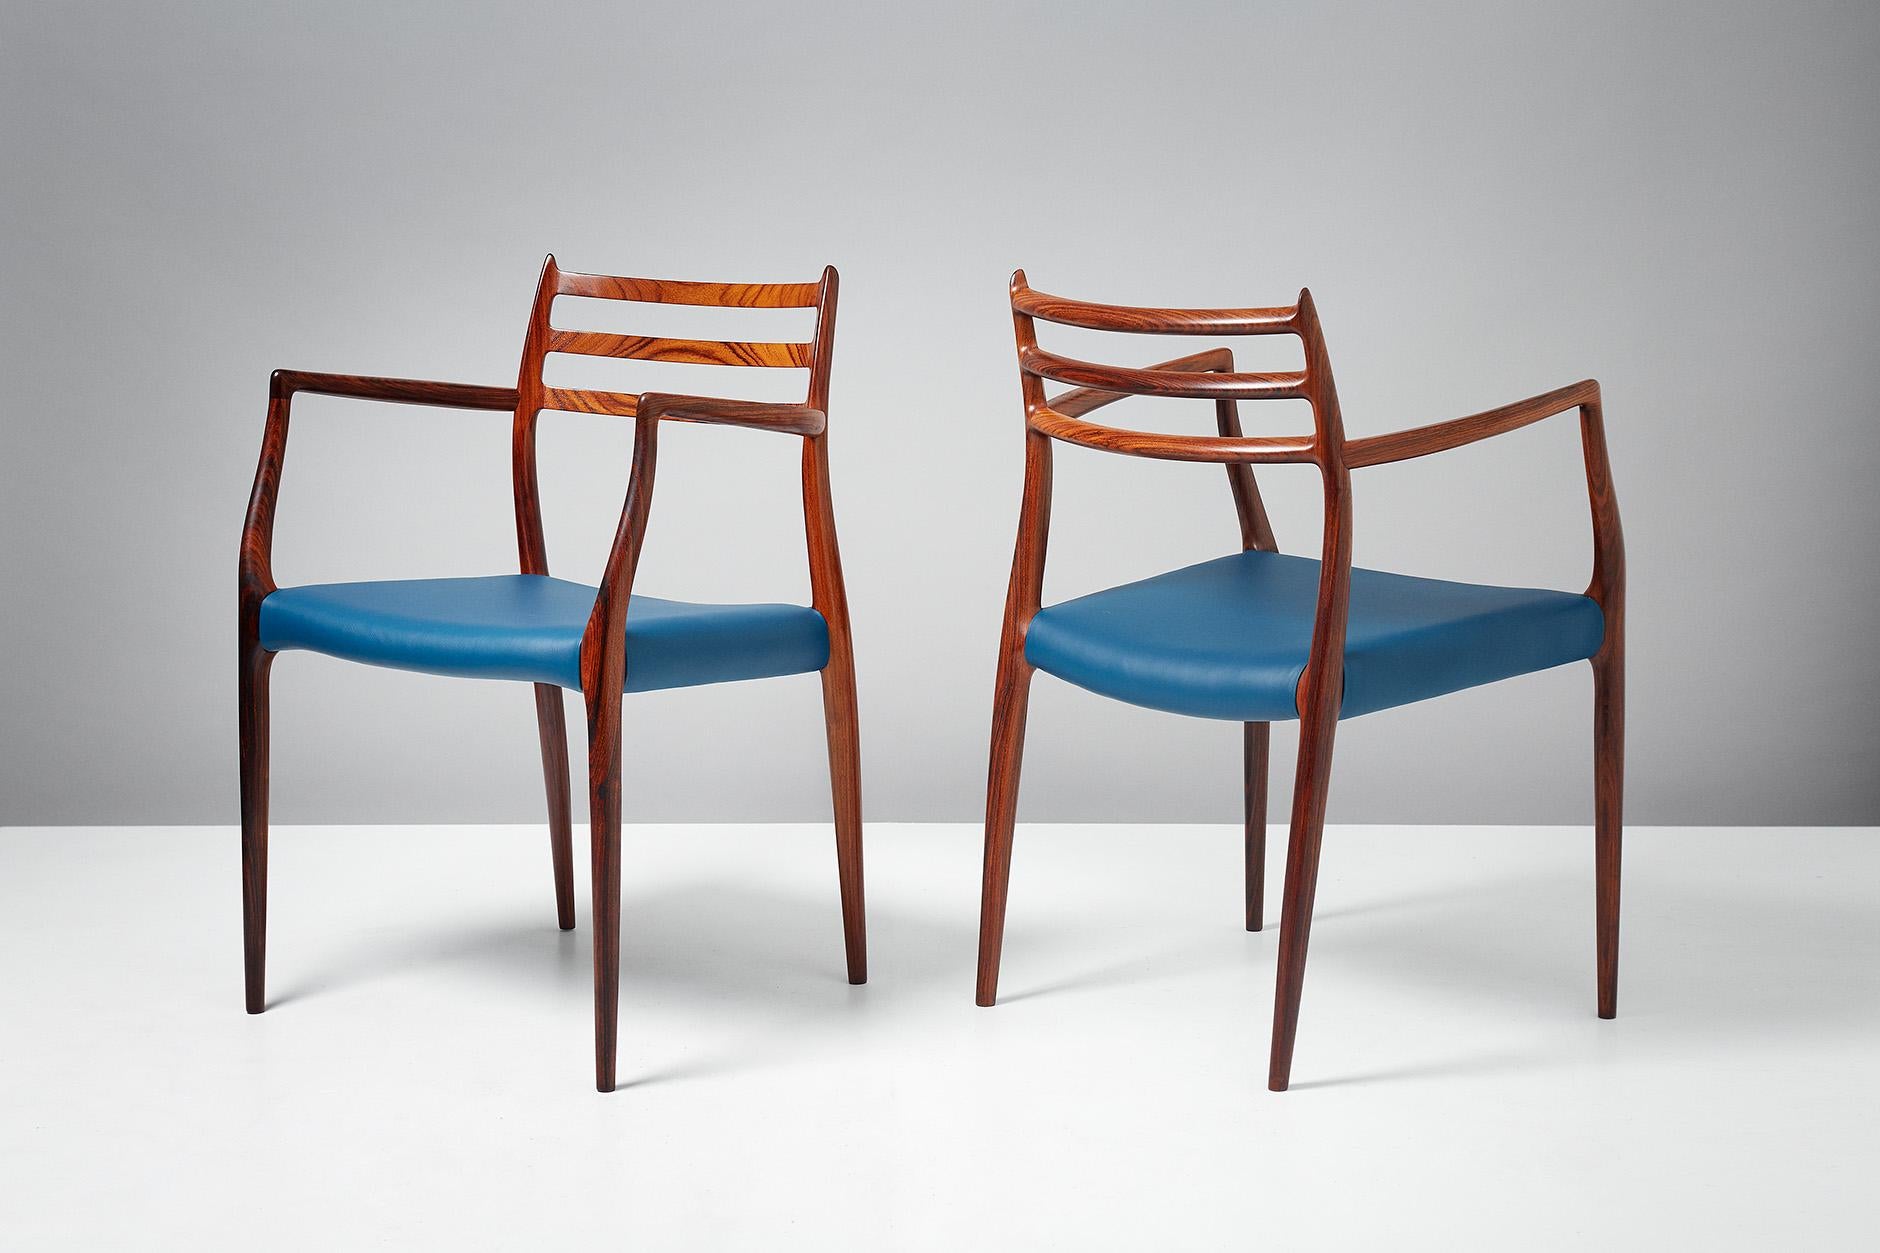 Niels Moller

Paar Sessel Modell 62, um 1962

Sessel aus Palisanderholz, entworfen von Niels Moller für J.L. Moller Mobelfabrik, Dänemark, 1962 mit neuen majolikablauen Ledersitzen. Bei diesen Beispielen handelt es sich um frühe Produktionen mit